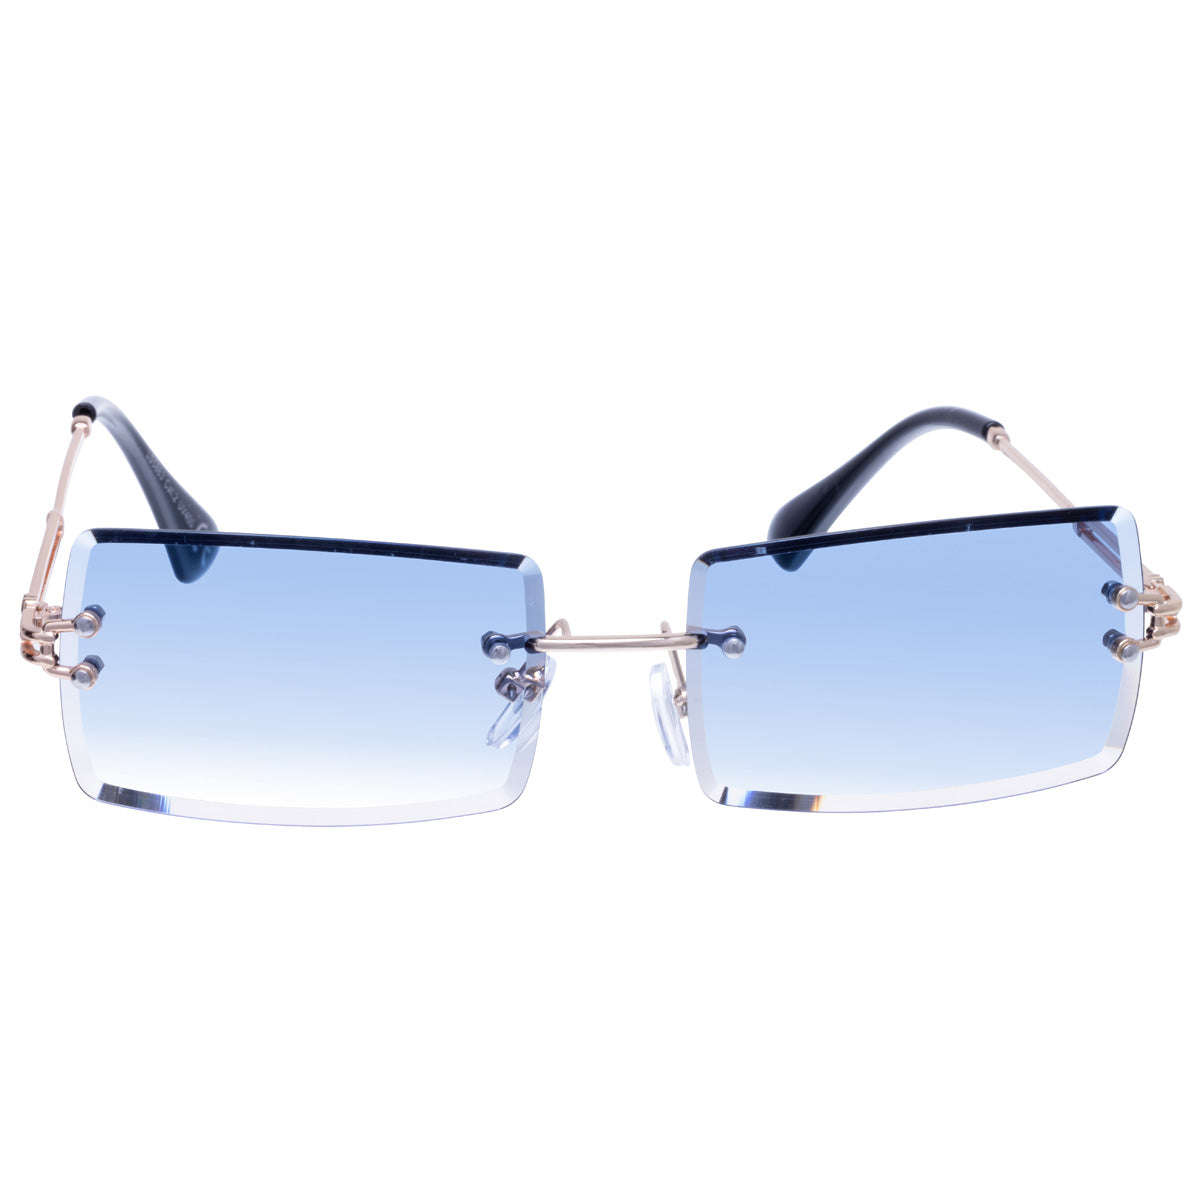 Rectangular sunglasses Frameless lenses